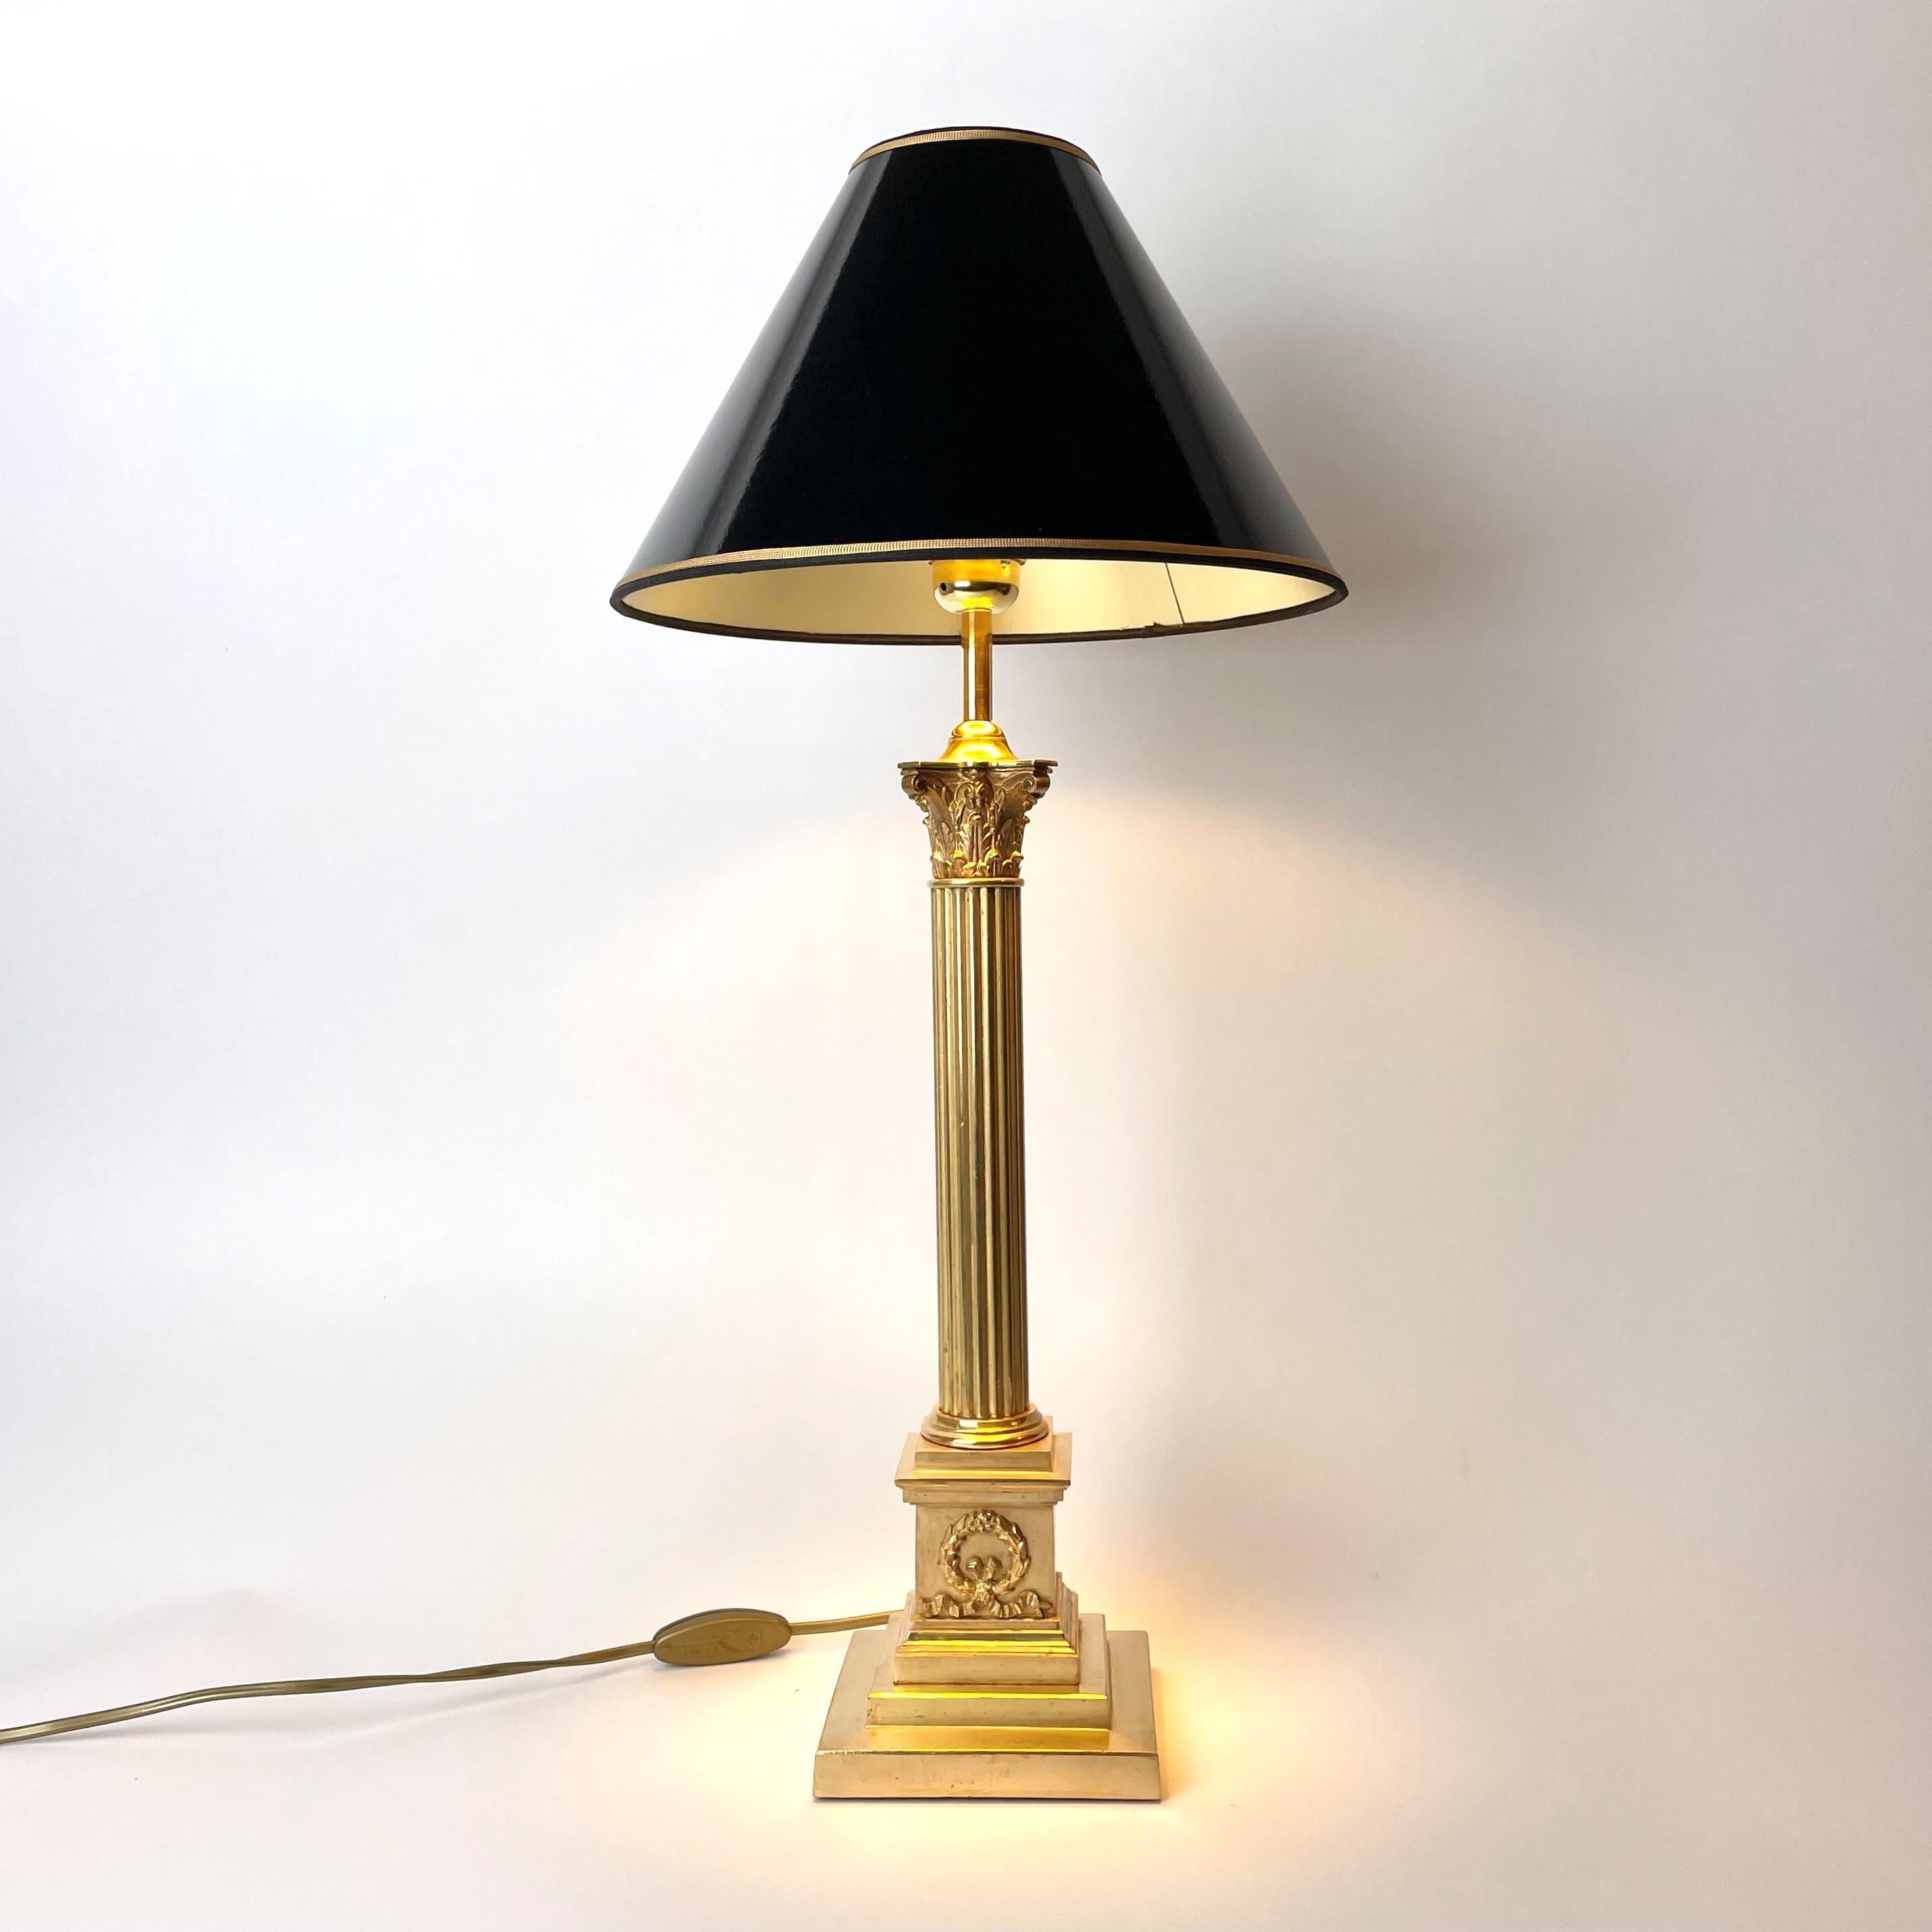 Magnifique lampe de table classique en or mat avec des bords polis en or. Il s'agit à l'origine d'une lampe à kérosène de la fin du 19e siècle qui a été transformée en lampe de table électrique au 20e siècle.

Magnifique dans son or mat avec les